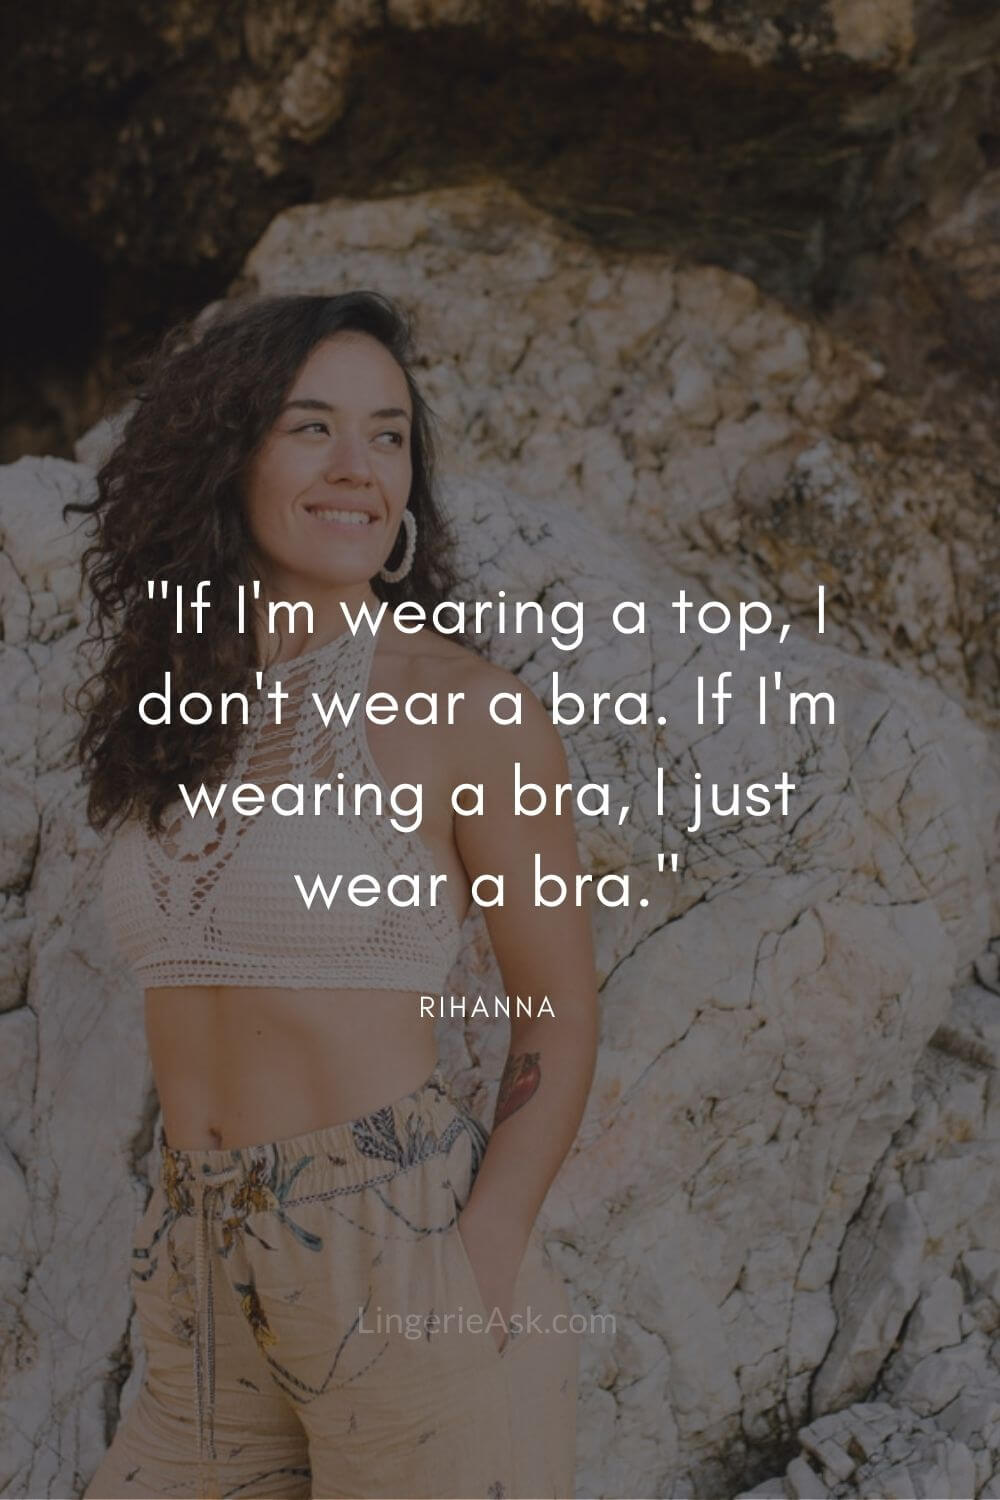 If I'm wearing a top, I don't wear a bra. If I'm wearing a bra, I just wear a bra.